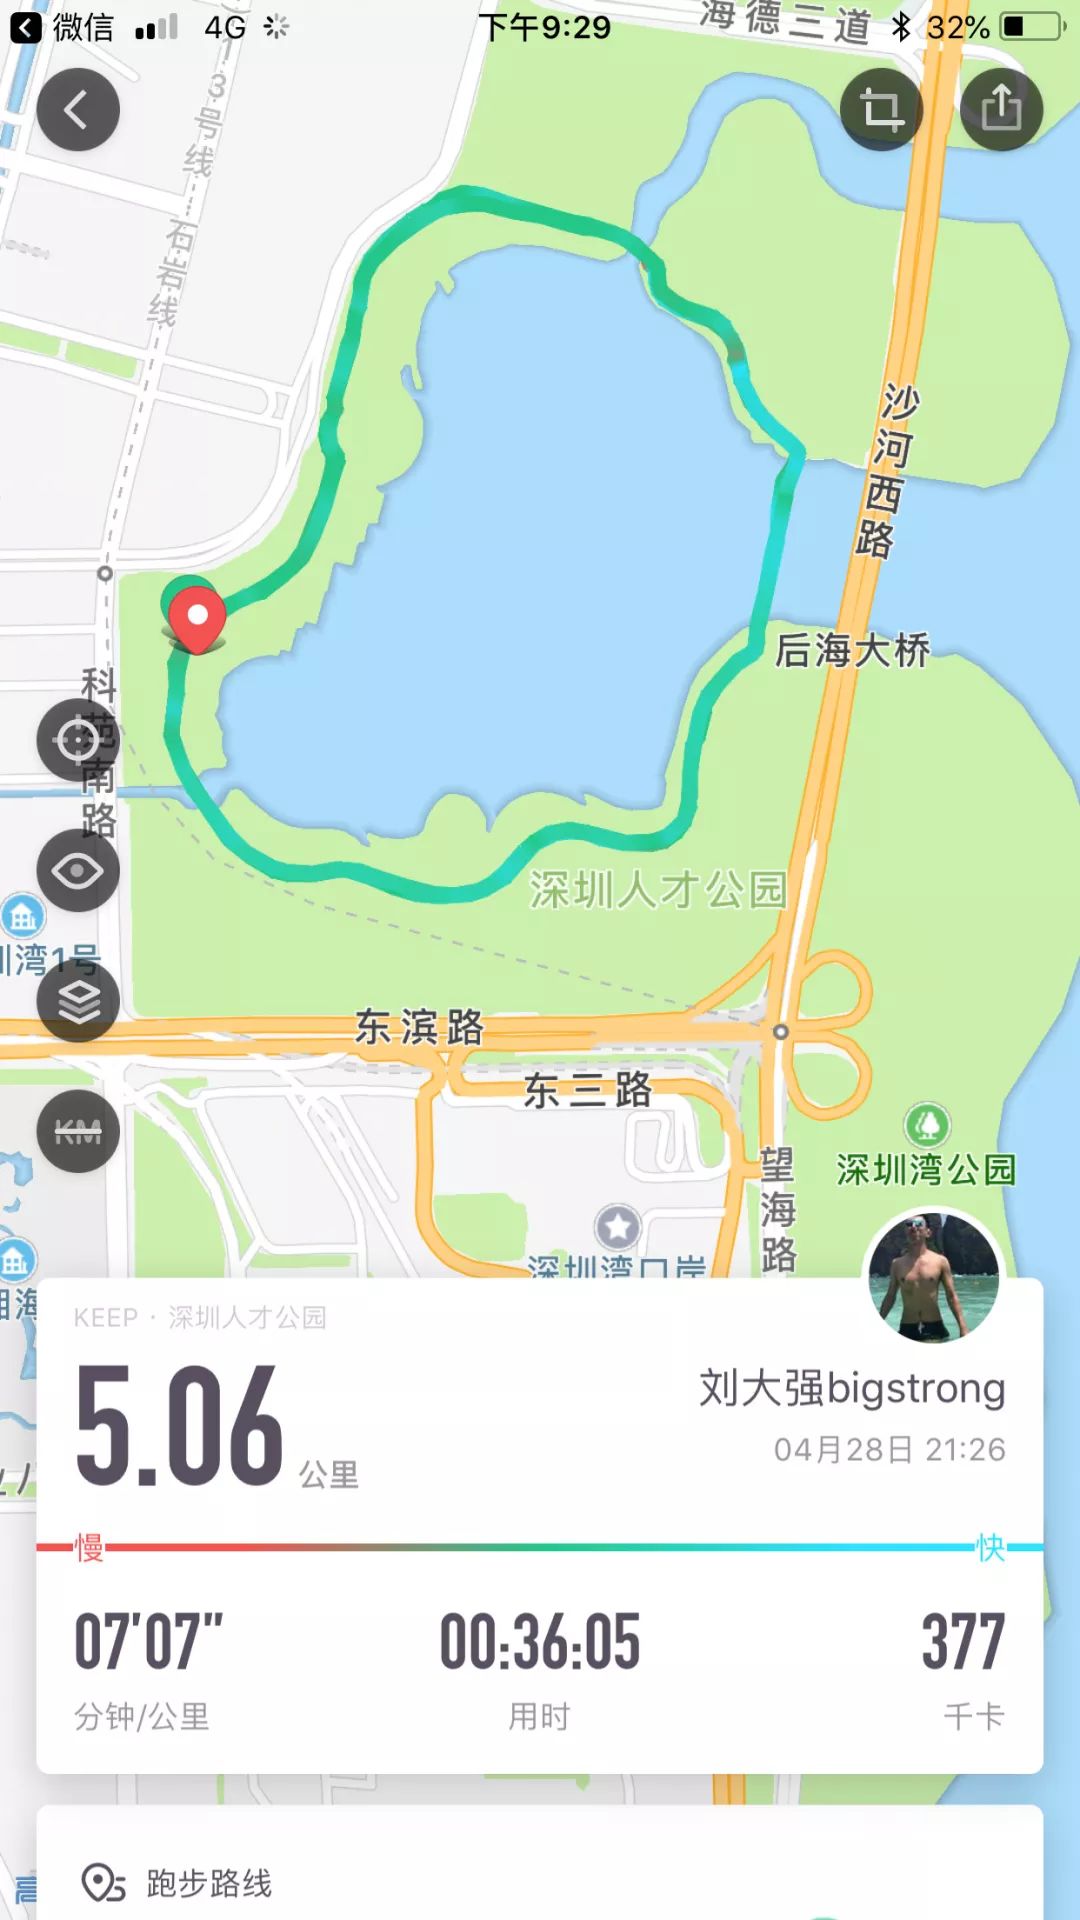 私藏了深圳15条最佳跑步线路曝光,看完这篇文